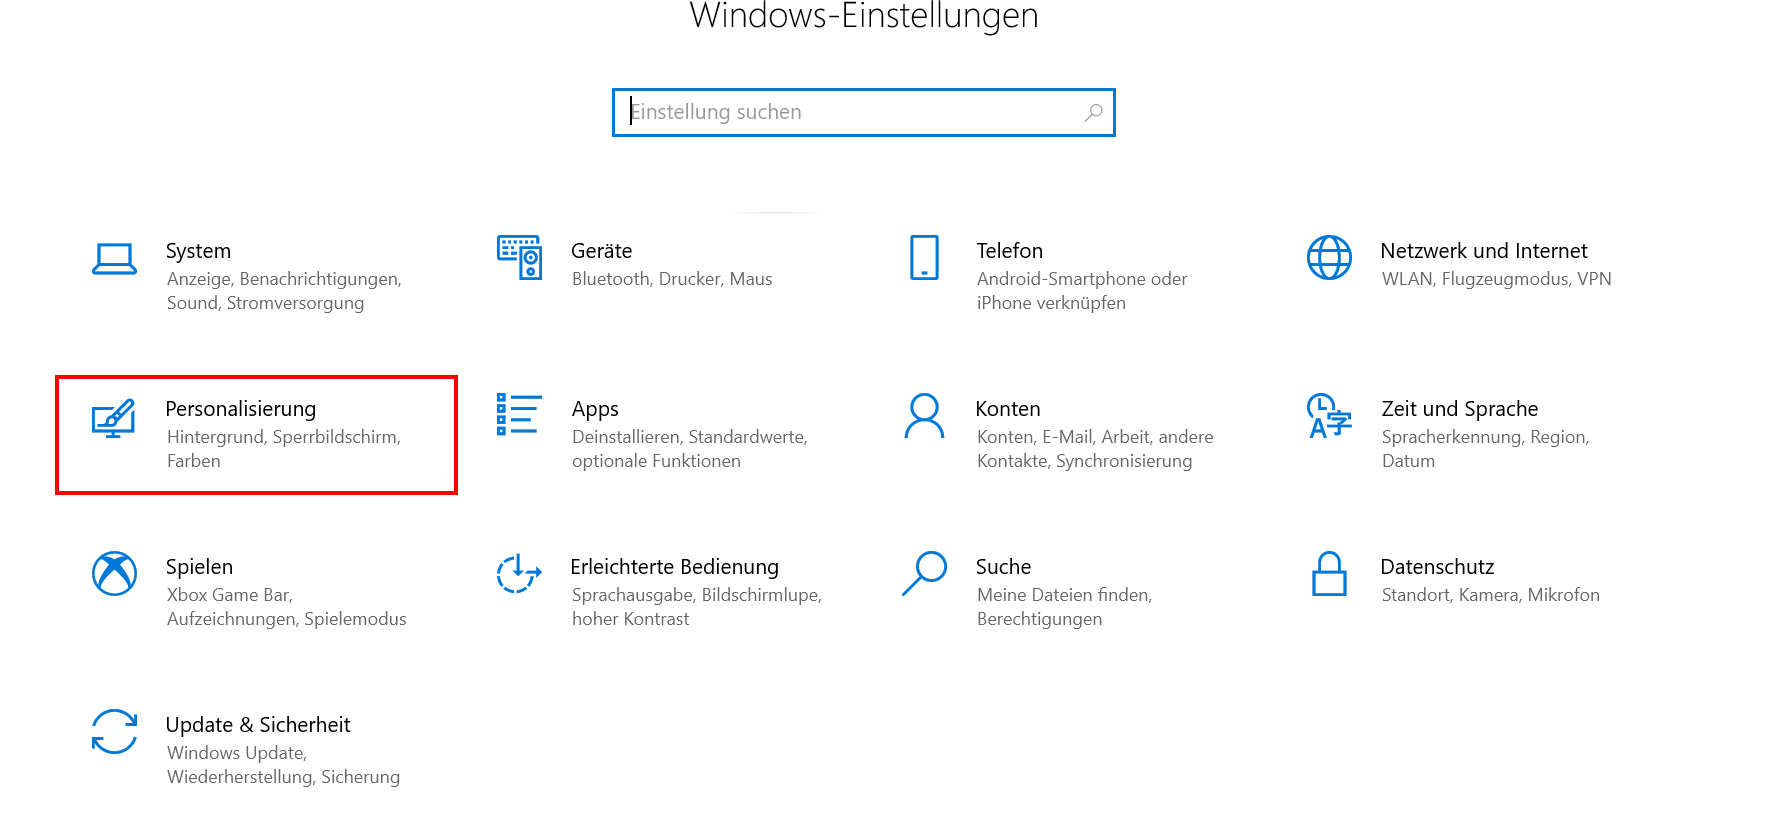 Windows-10-Einstellungen: Überblick